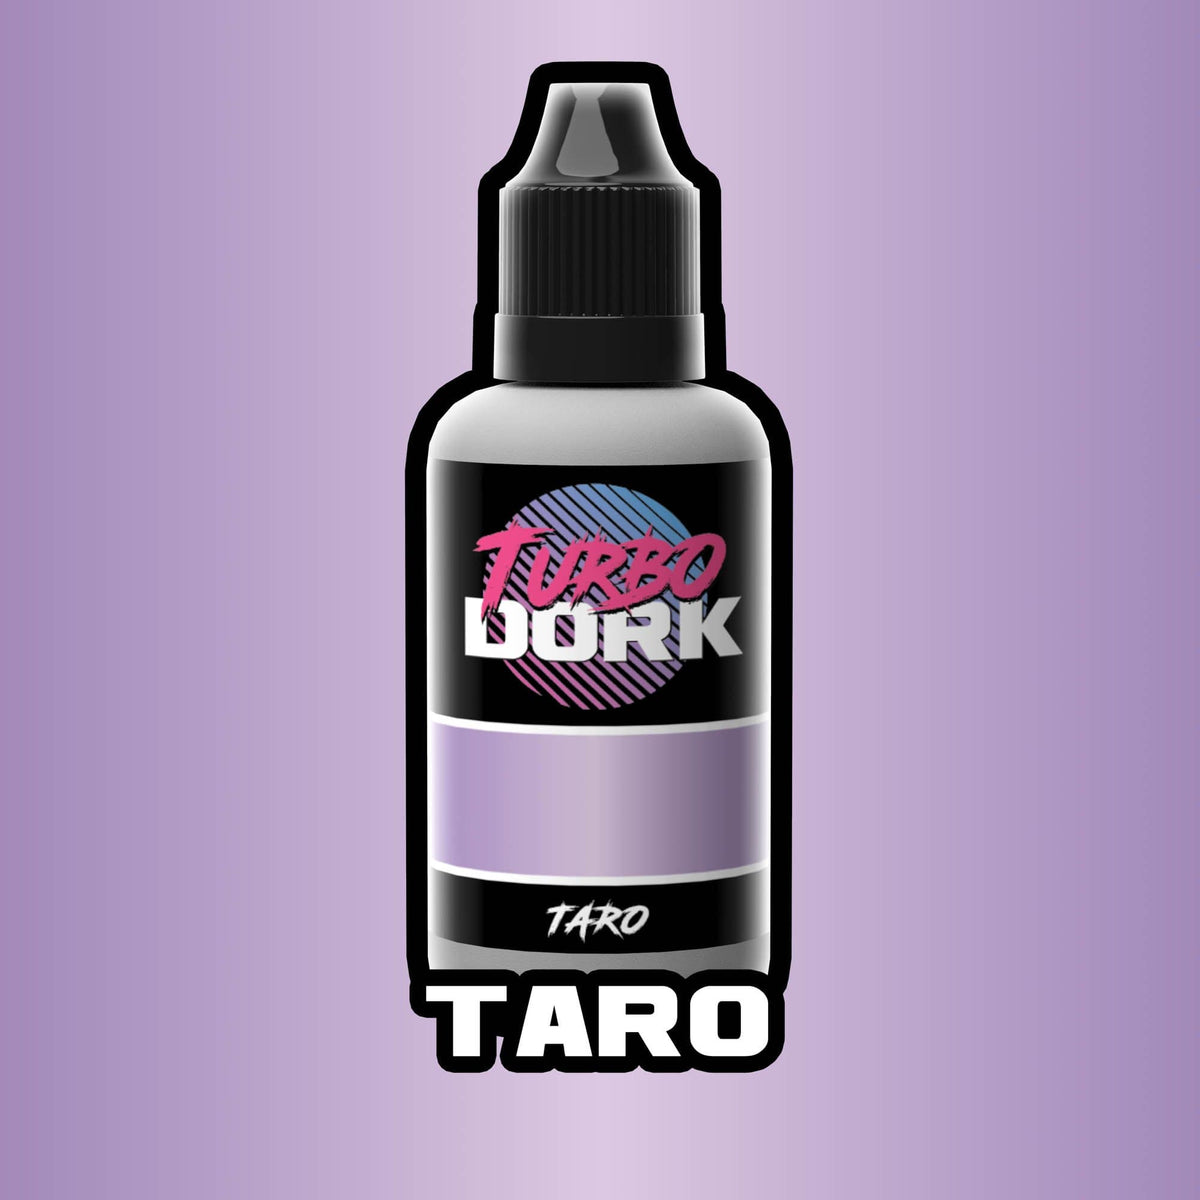 Taro Metallic Acrylic Paint Metallic Turbo Dork Exit 23 Games Taro Metallic Acrylic Paint